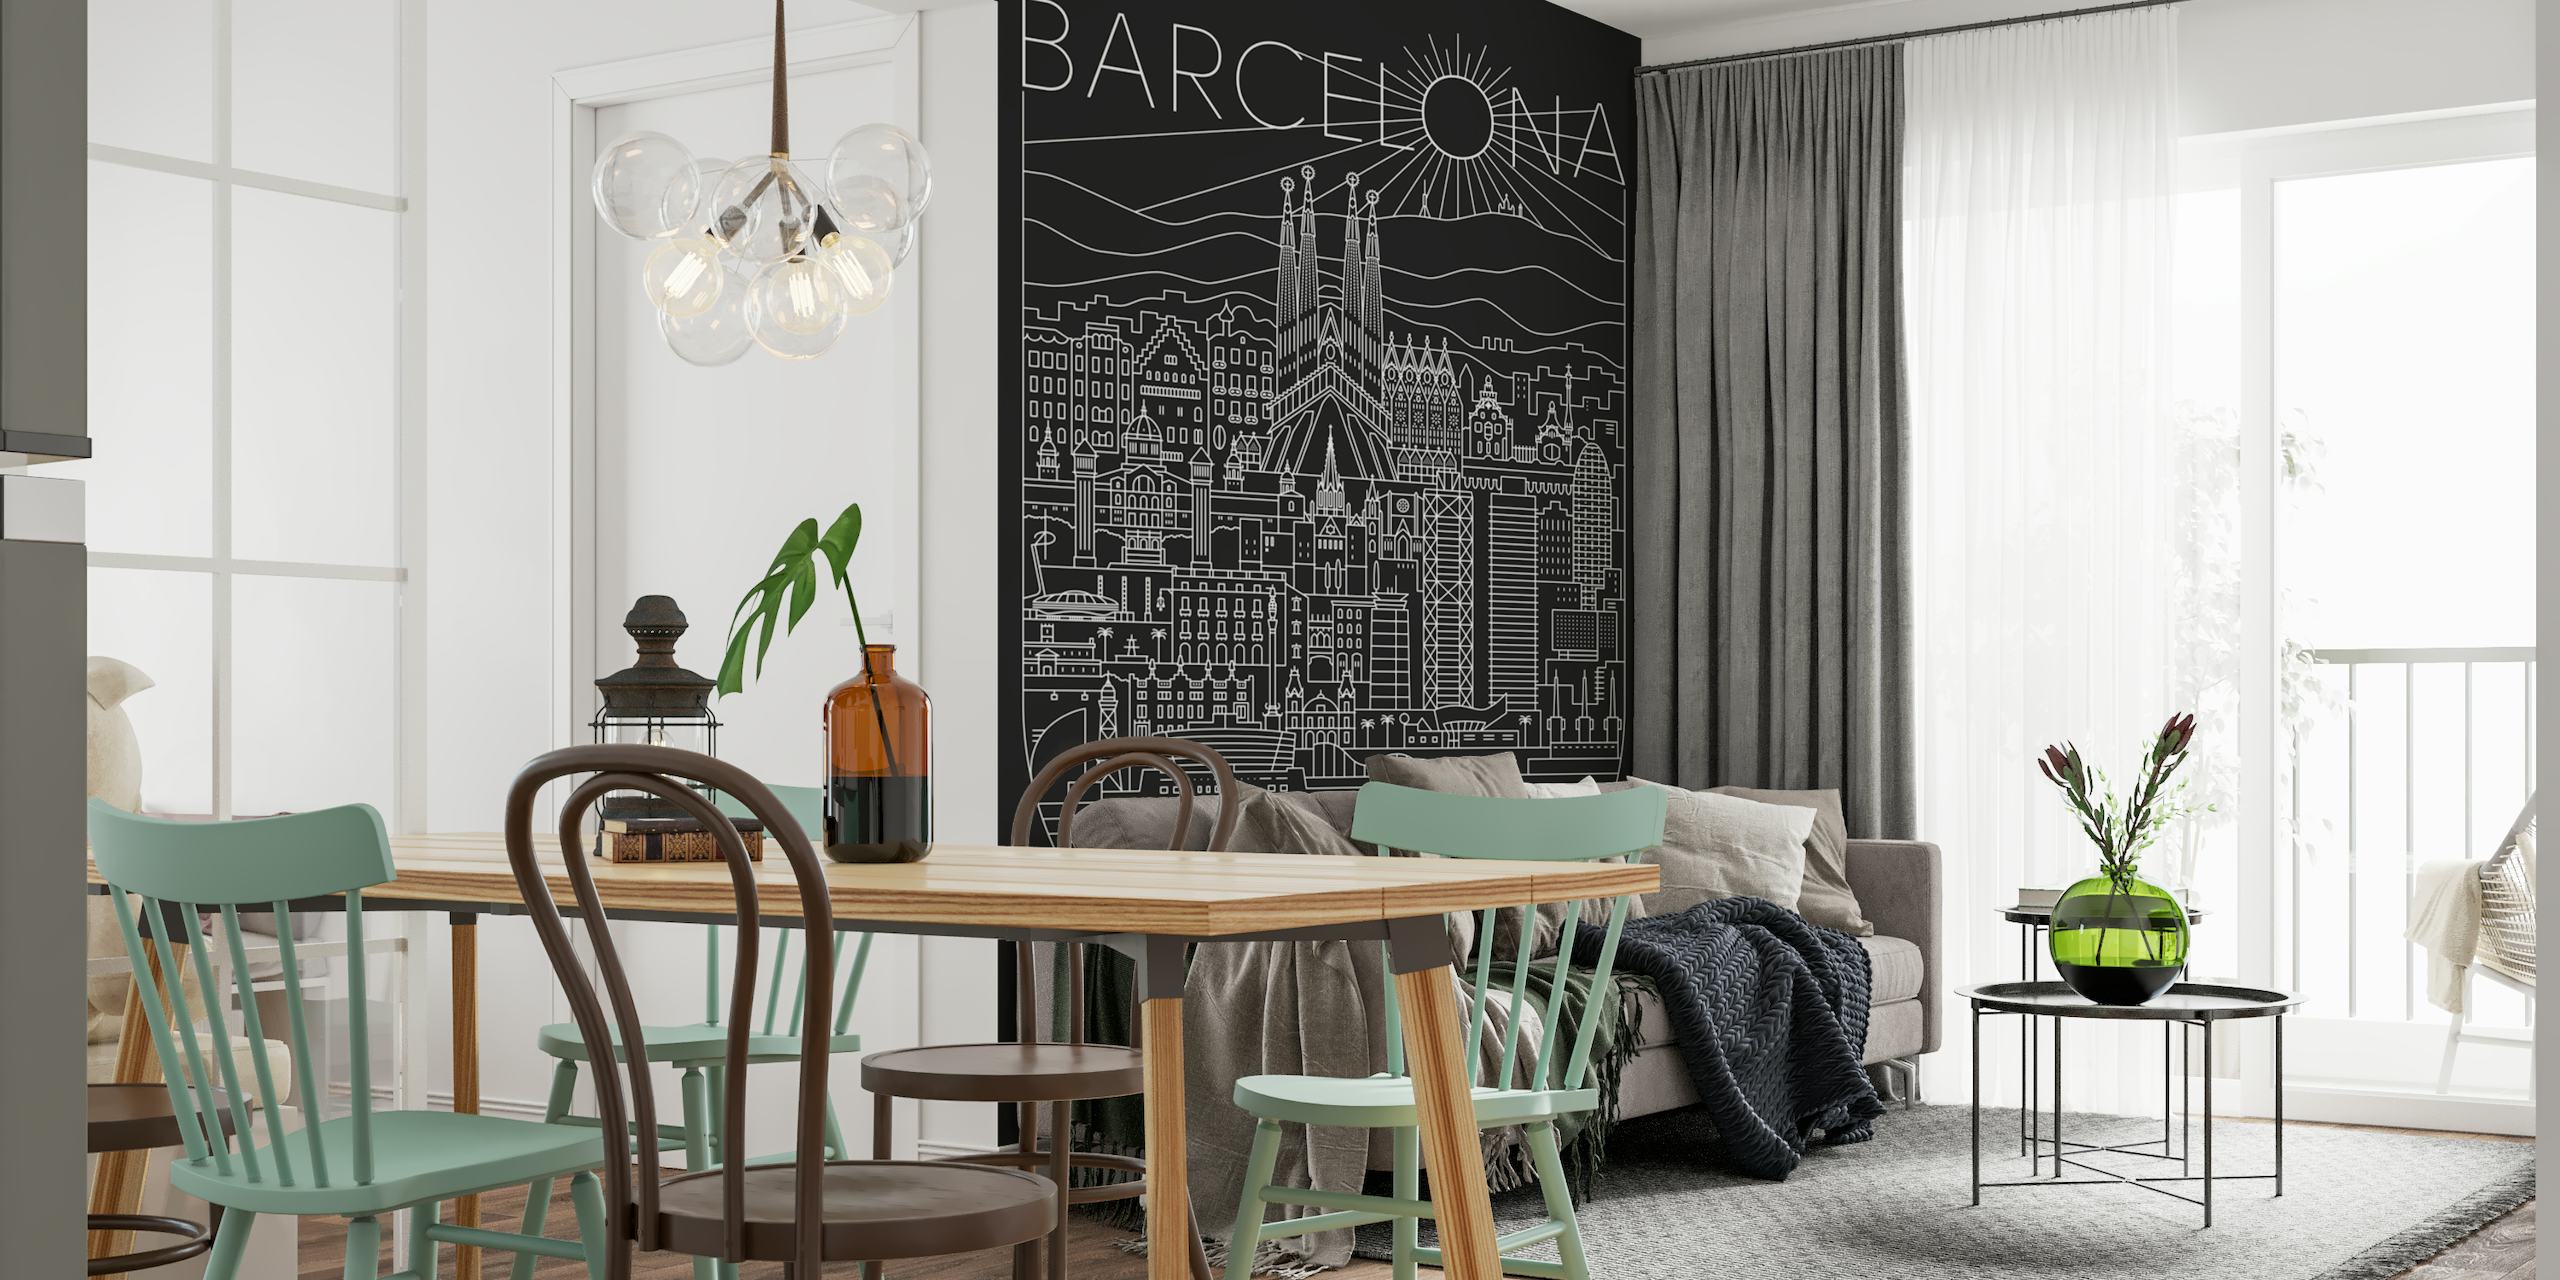 Line-Art-Wandbild, das Barcelonas Stadtbild mit Highlights wie der Sagrada Familia darstellt